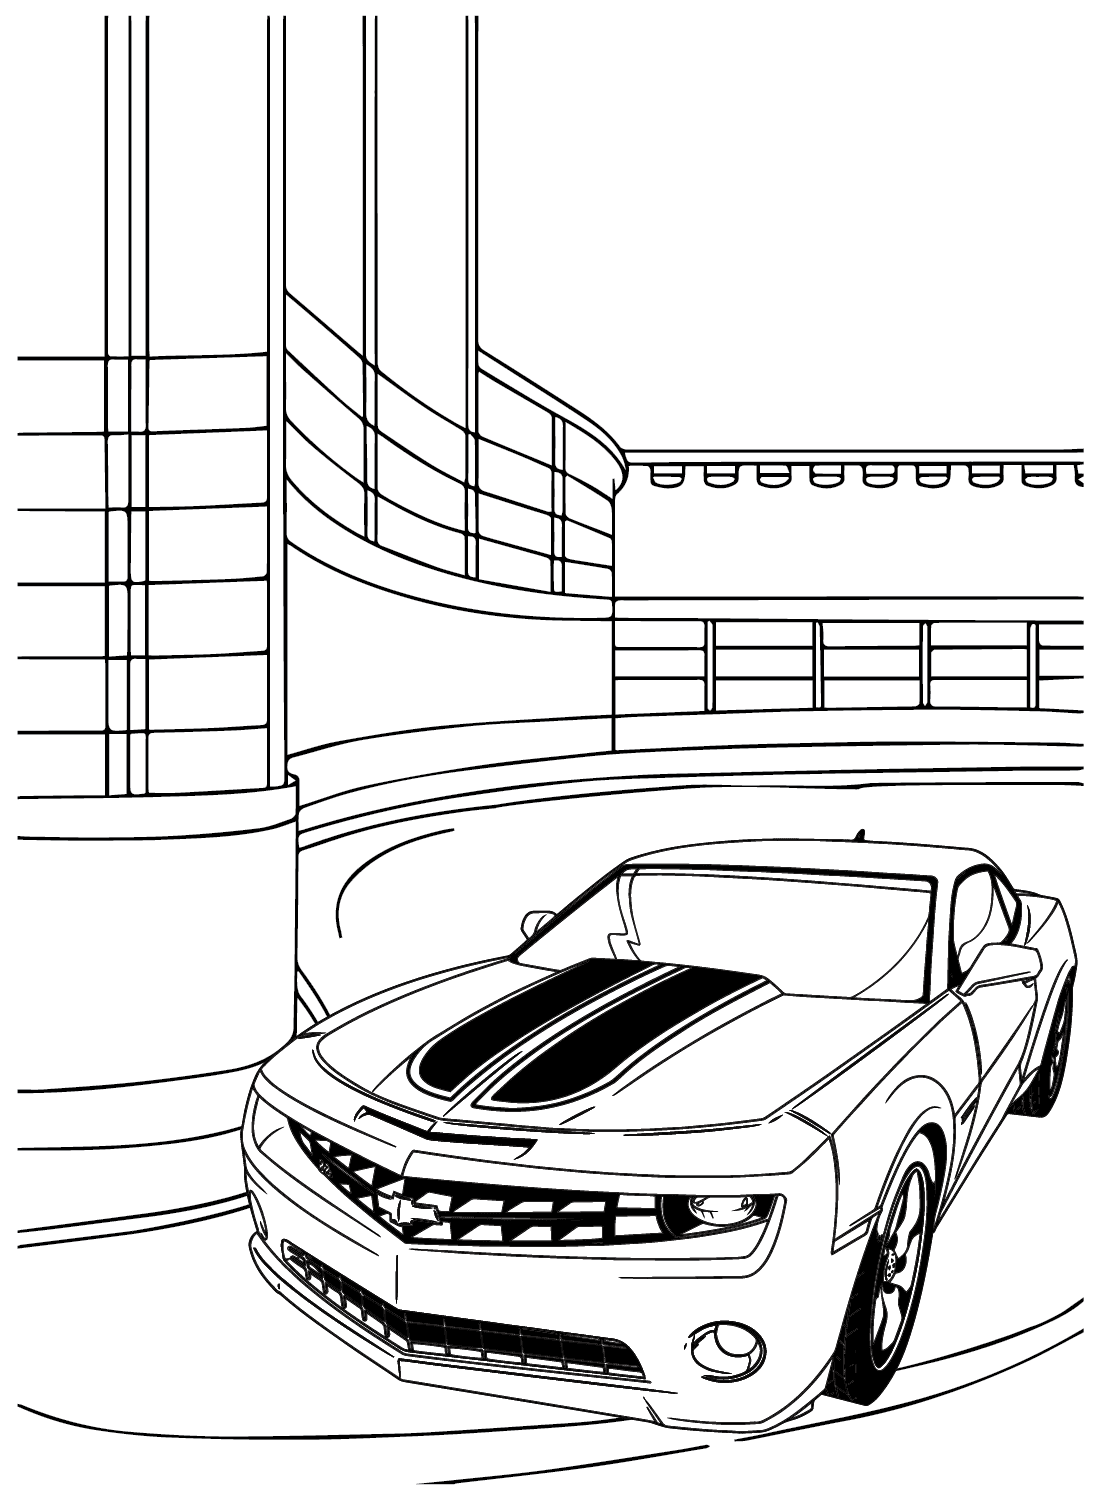 Folha para colorir de carros Chevrolet da Chevrolet